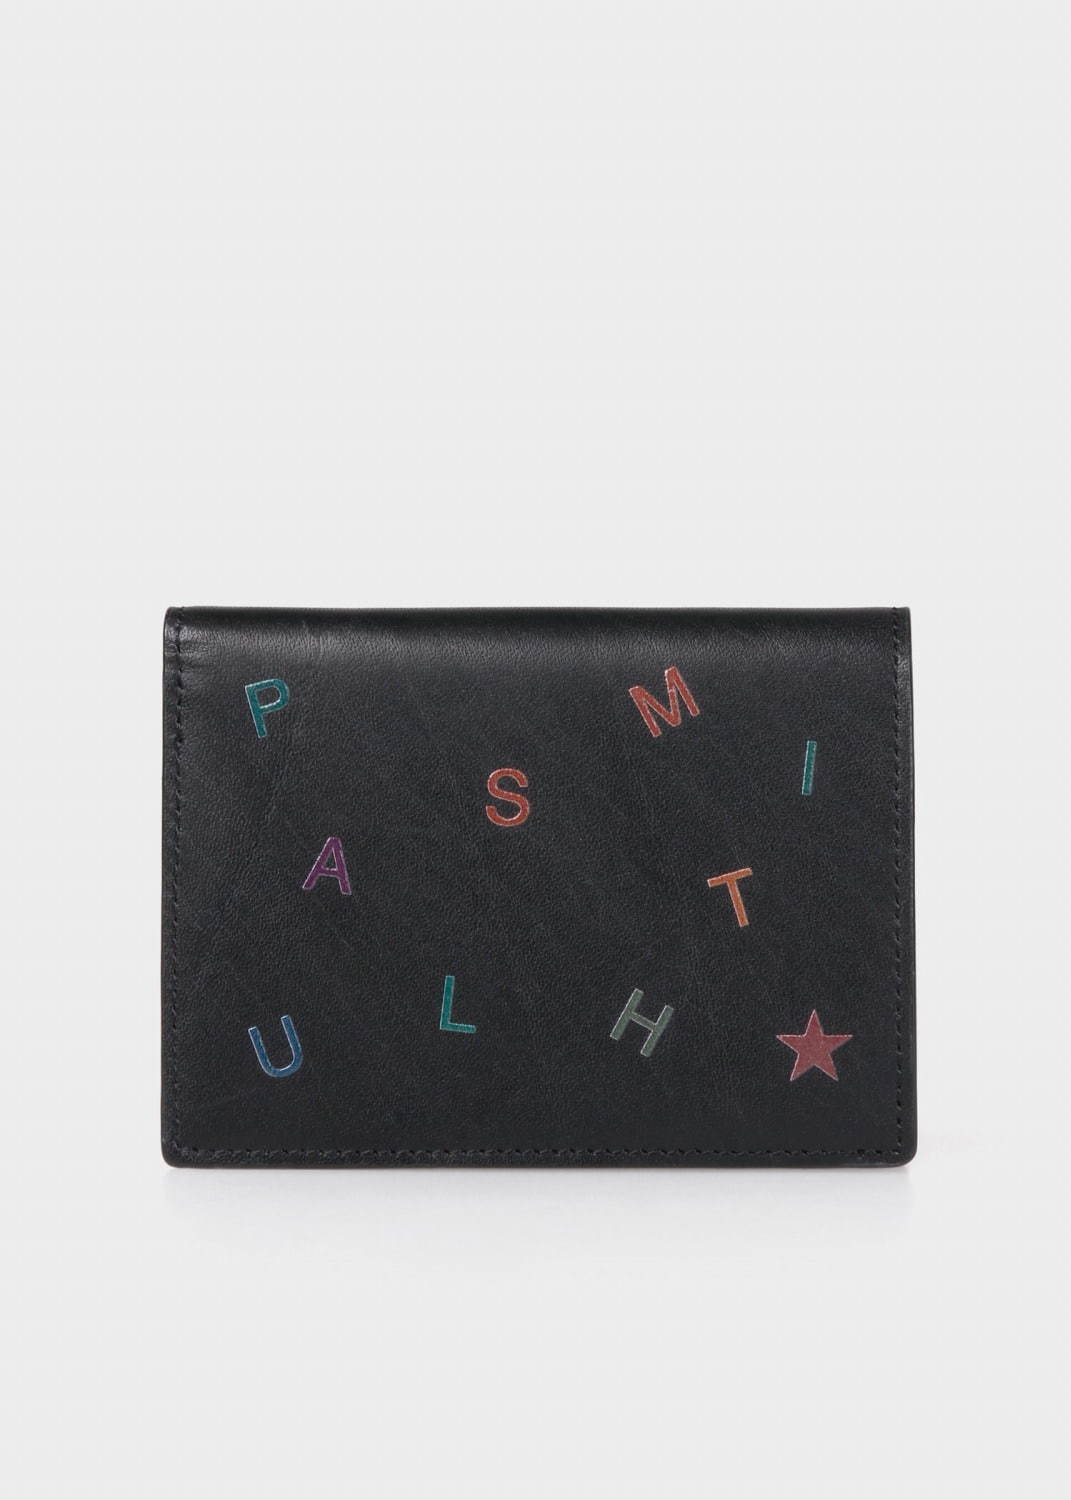 ポール・スミス レターズ ミニ財布 (W8×H11×D1.5cm) 25,300円(税込)